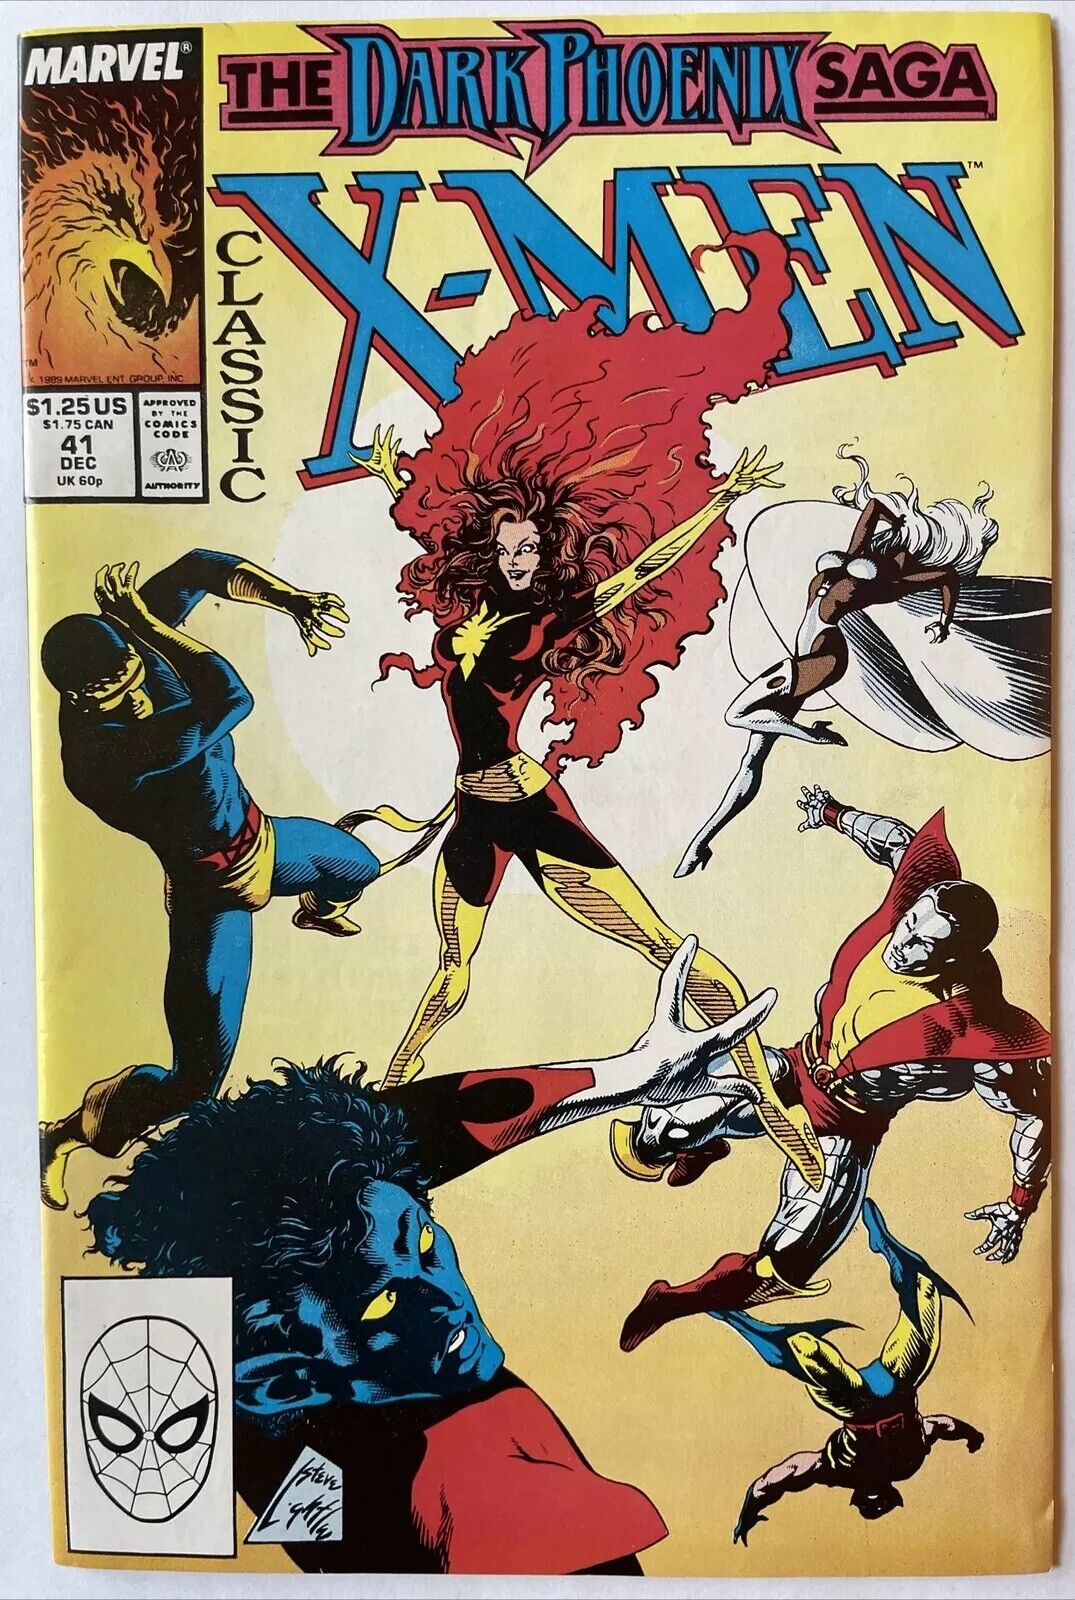 Classic X-Men #41 • Reprints Uncanny X-Men #135 Dark Phoenix Story Arc